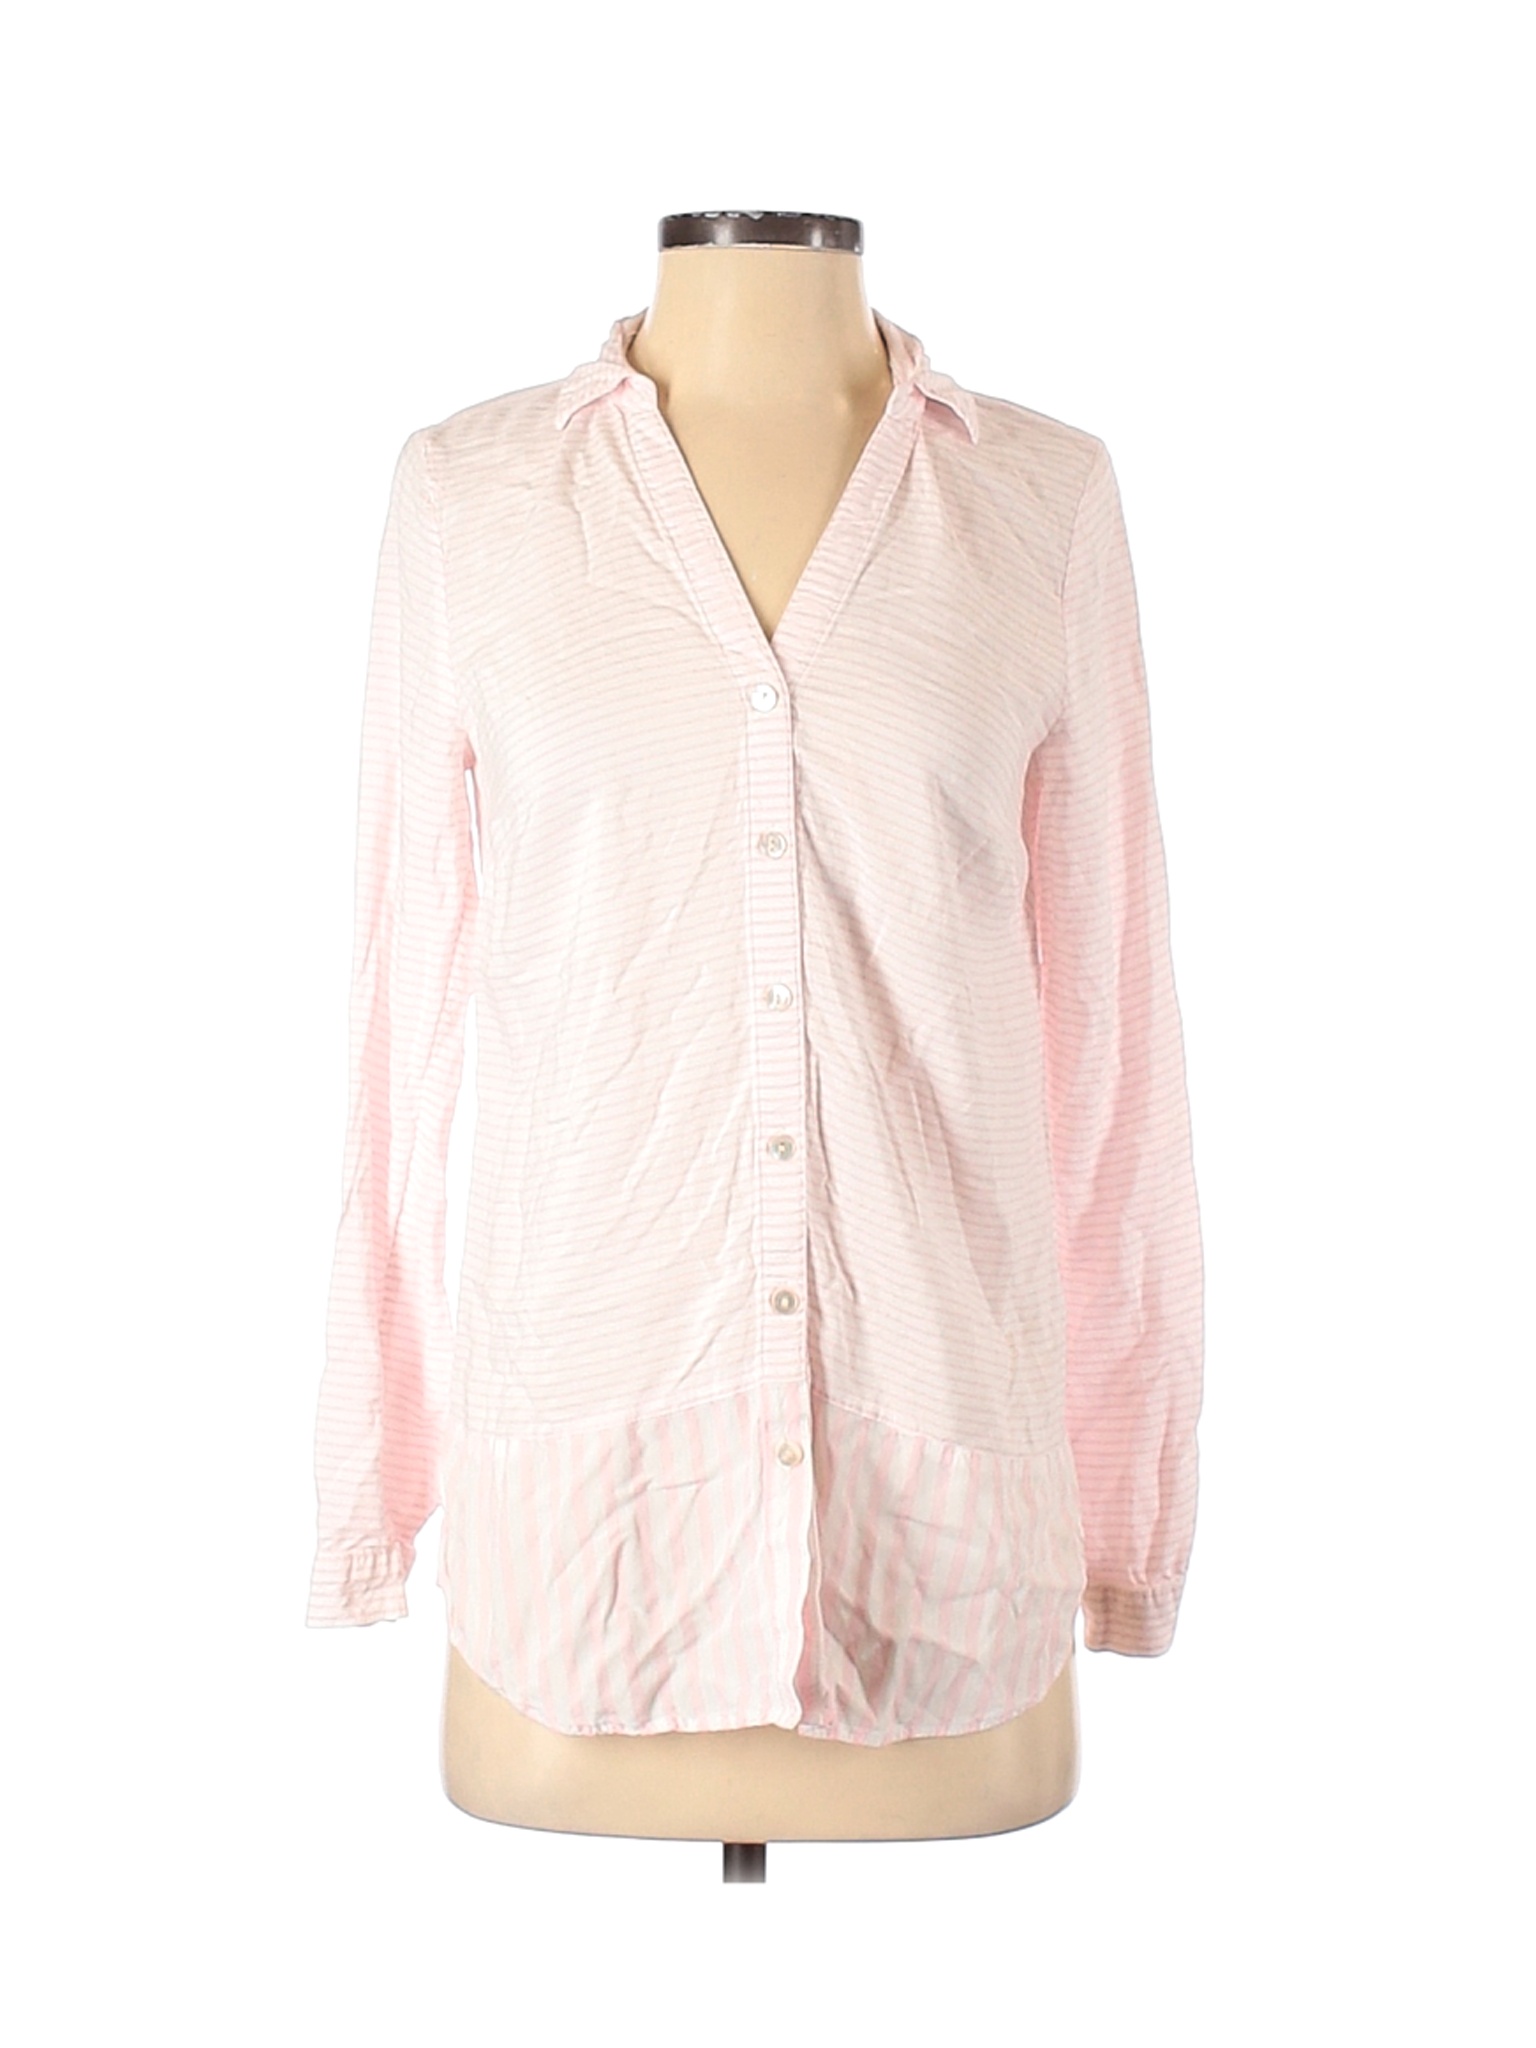 J.Jill Women Pink Long Sleeve Blouse XS | eBay